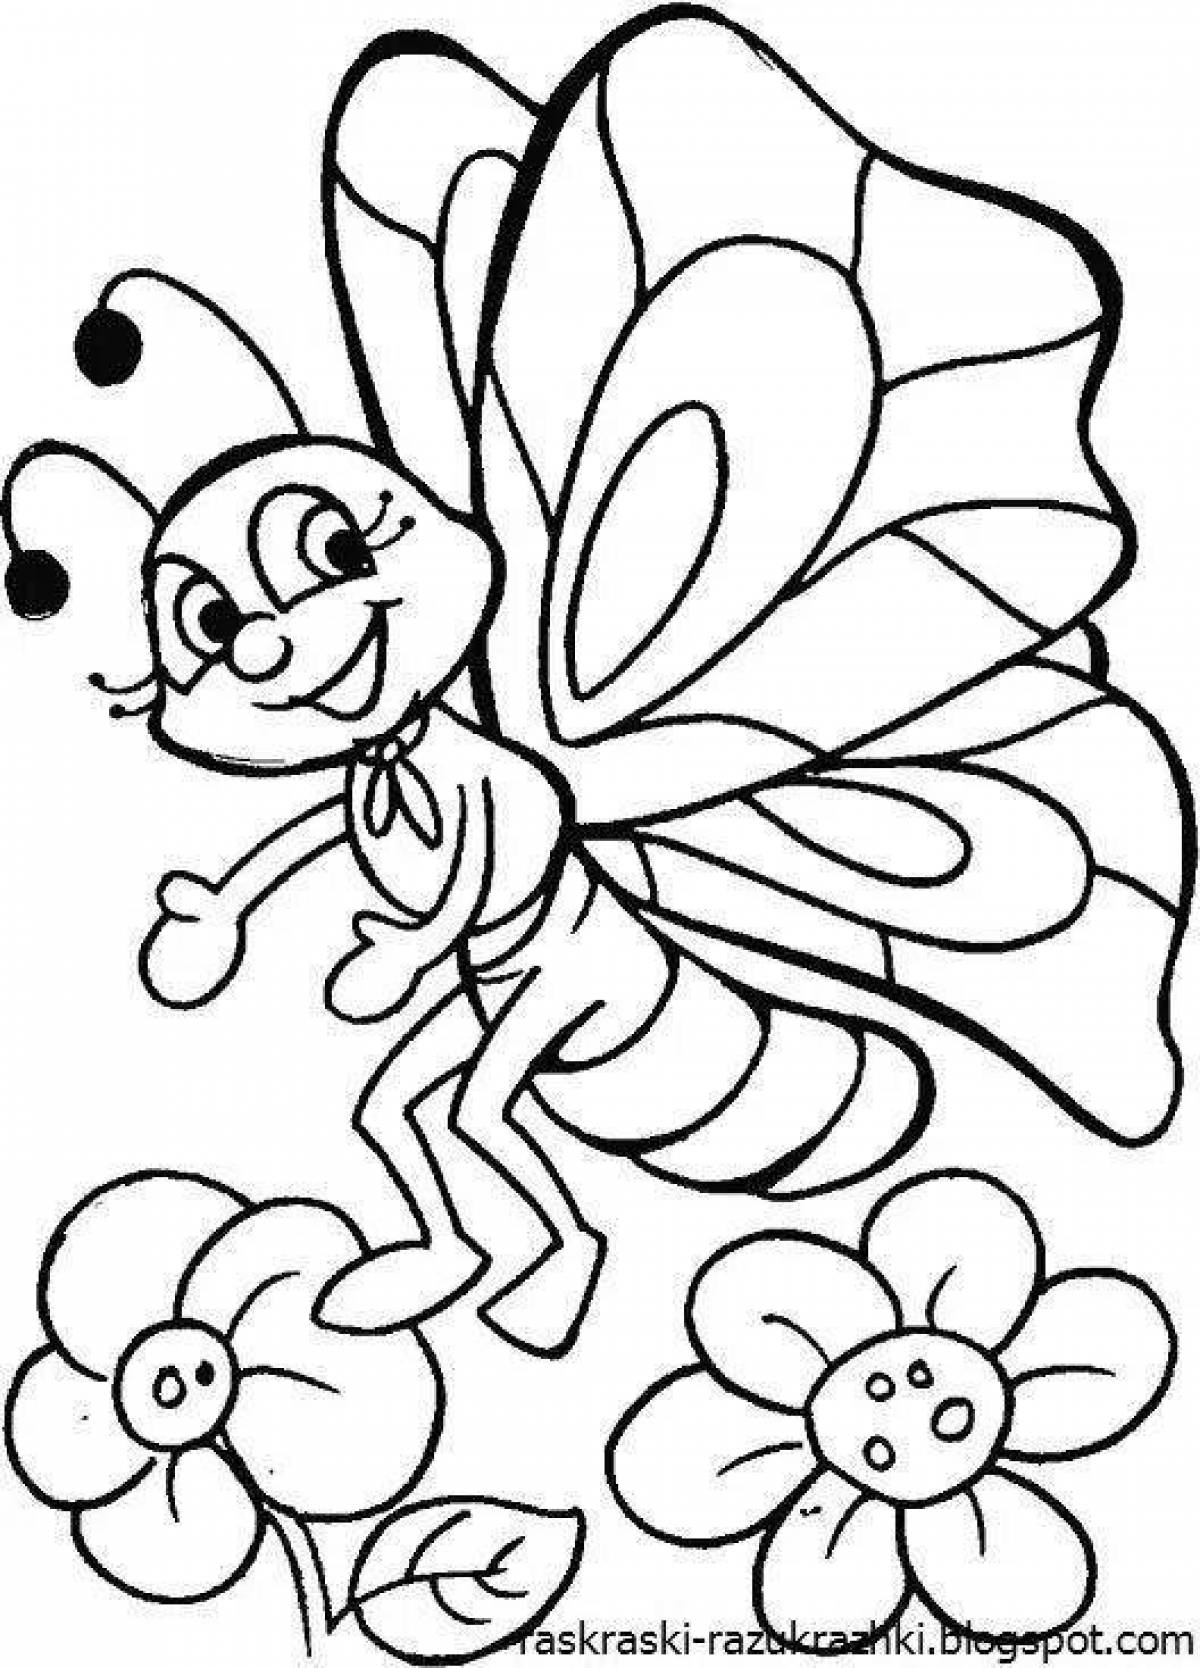 Раскраски для детей 4 5 бабочки. Бабочка раскраска для детей. Раскраски длядля детей. Раскраски насекомые для детей 4-5 лет. Раскраска насекомые для малышей.